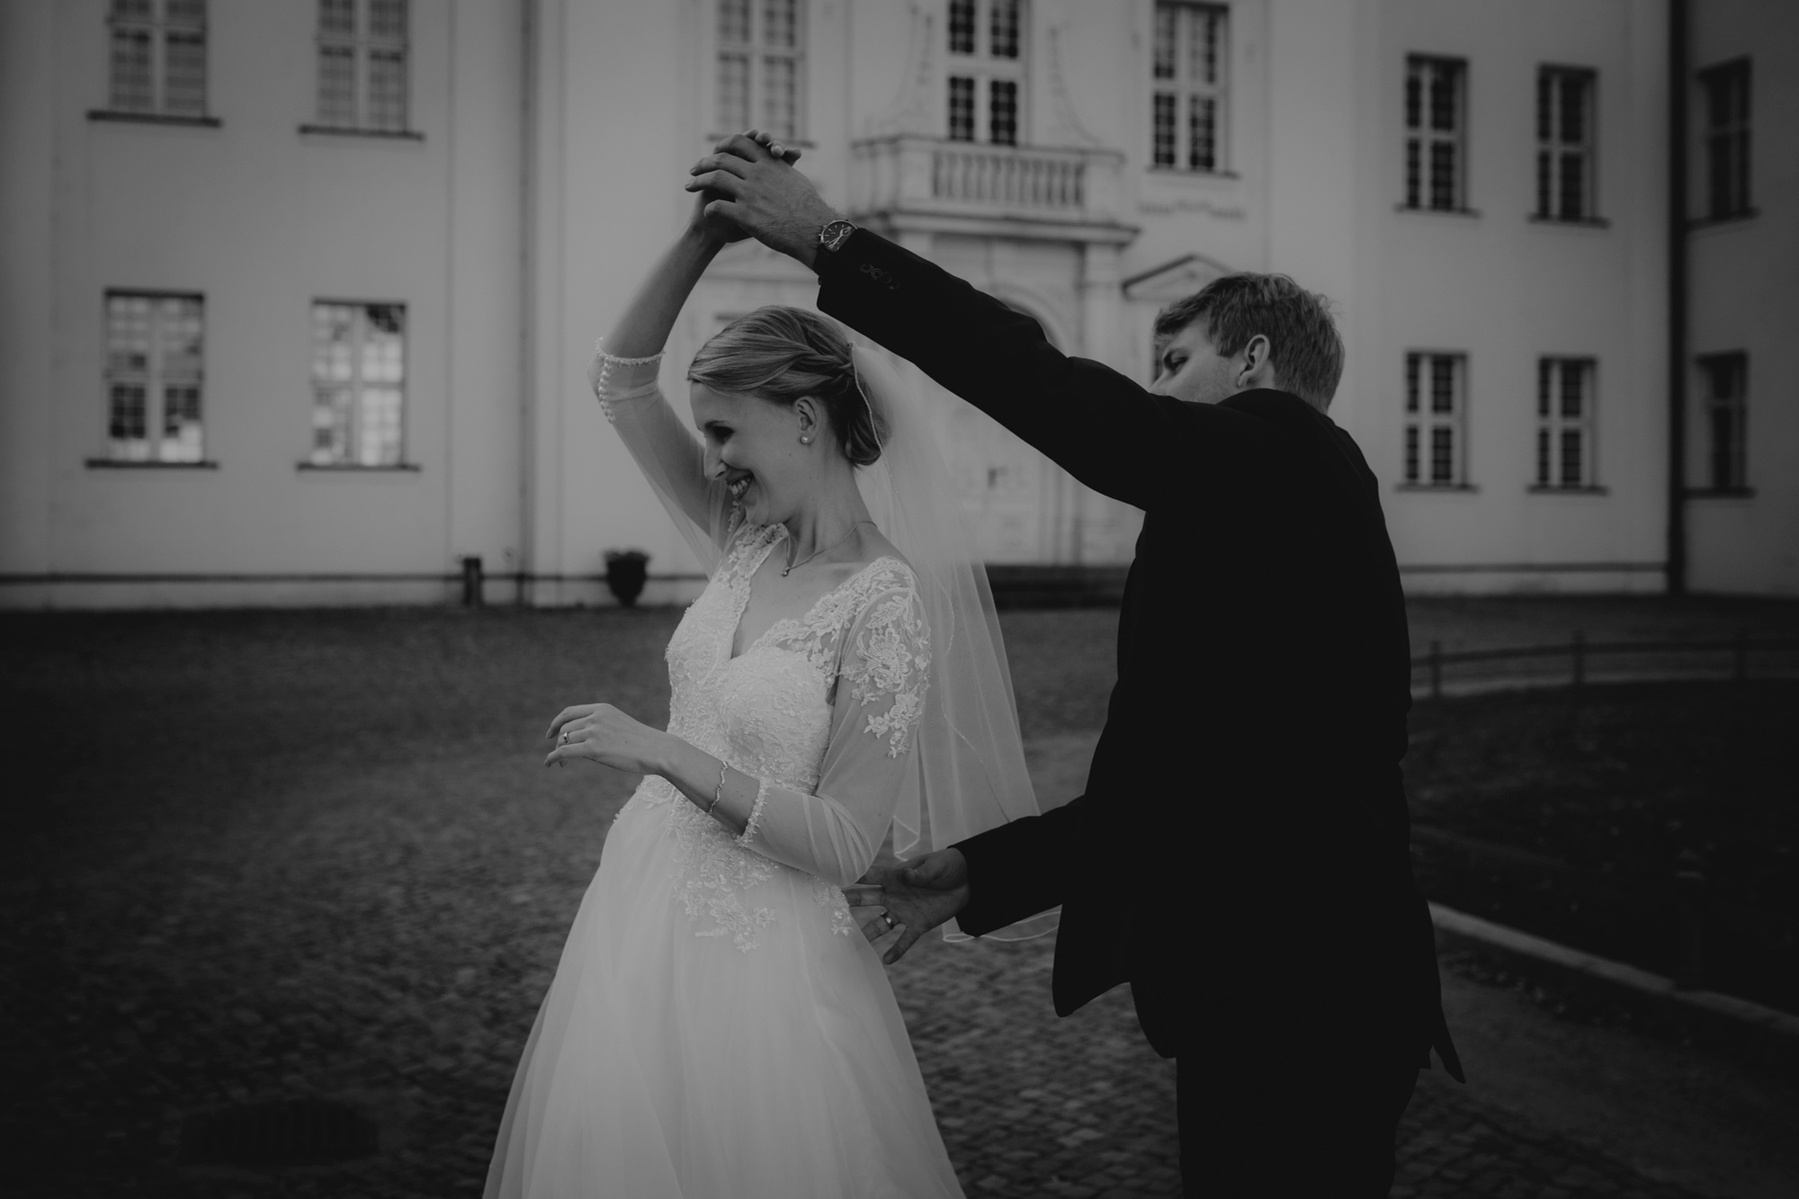 Braut und Bräutigam tanzen ausgelassen während ihres Paarshootings am Hochzeitstag.